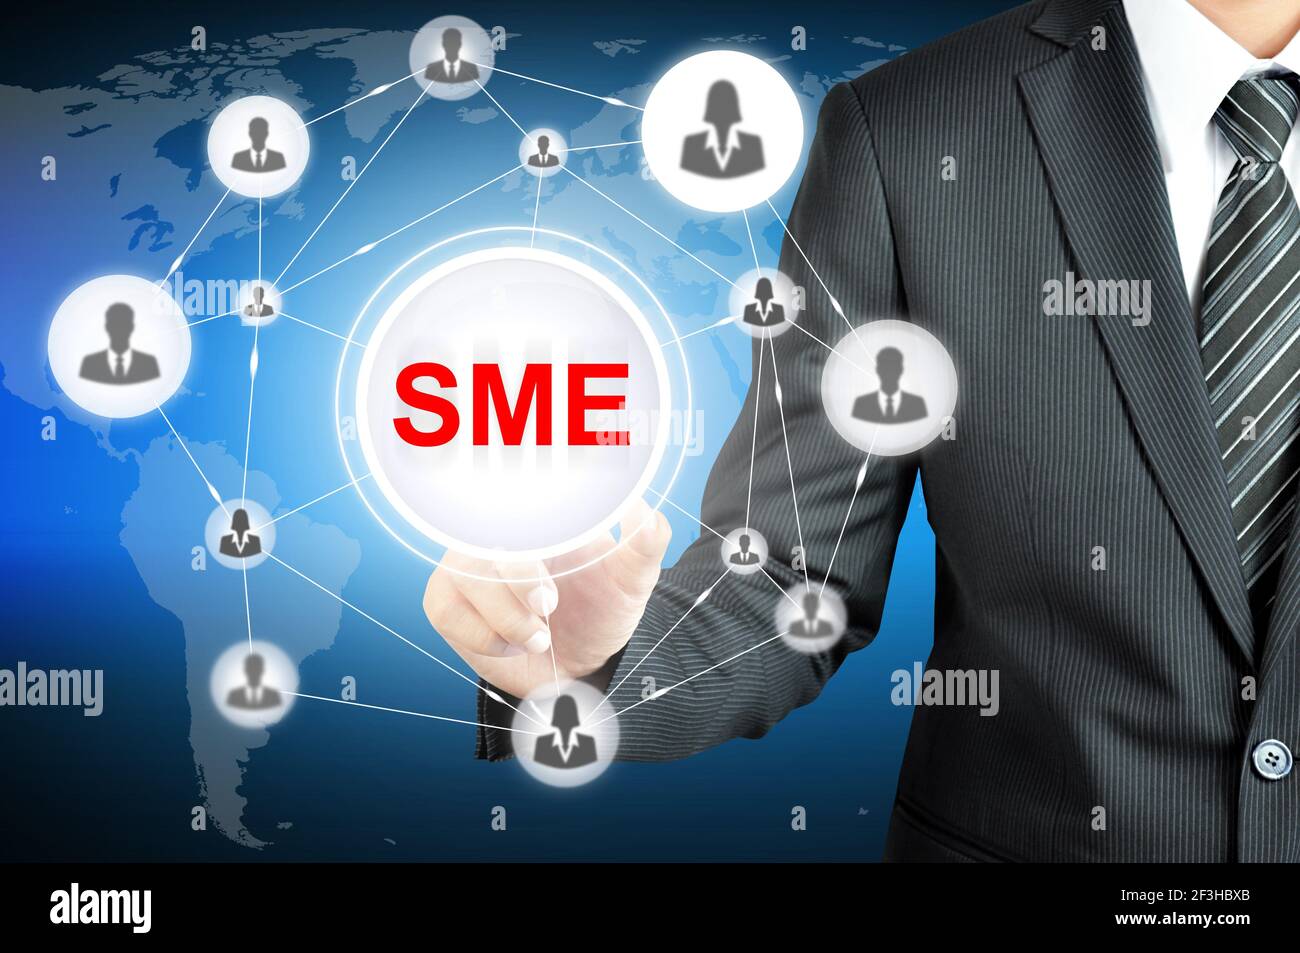 Homme d'affaires faisant référence aux PME (petites et moyennes entreprises) connectez-vous à l'écran virtuel avec les icônes de personnes liées au réseau Banque D'Images